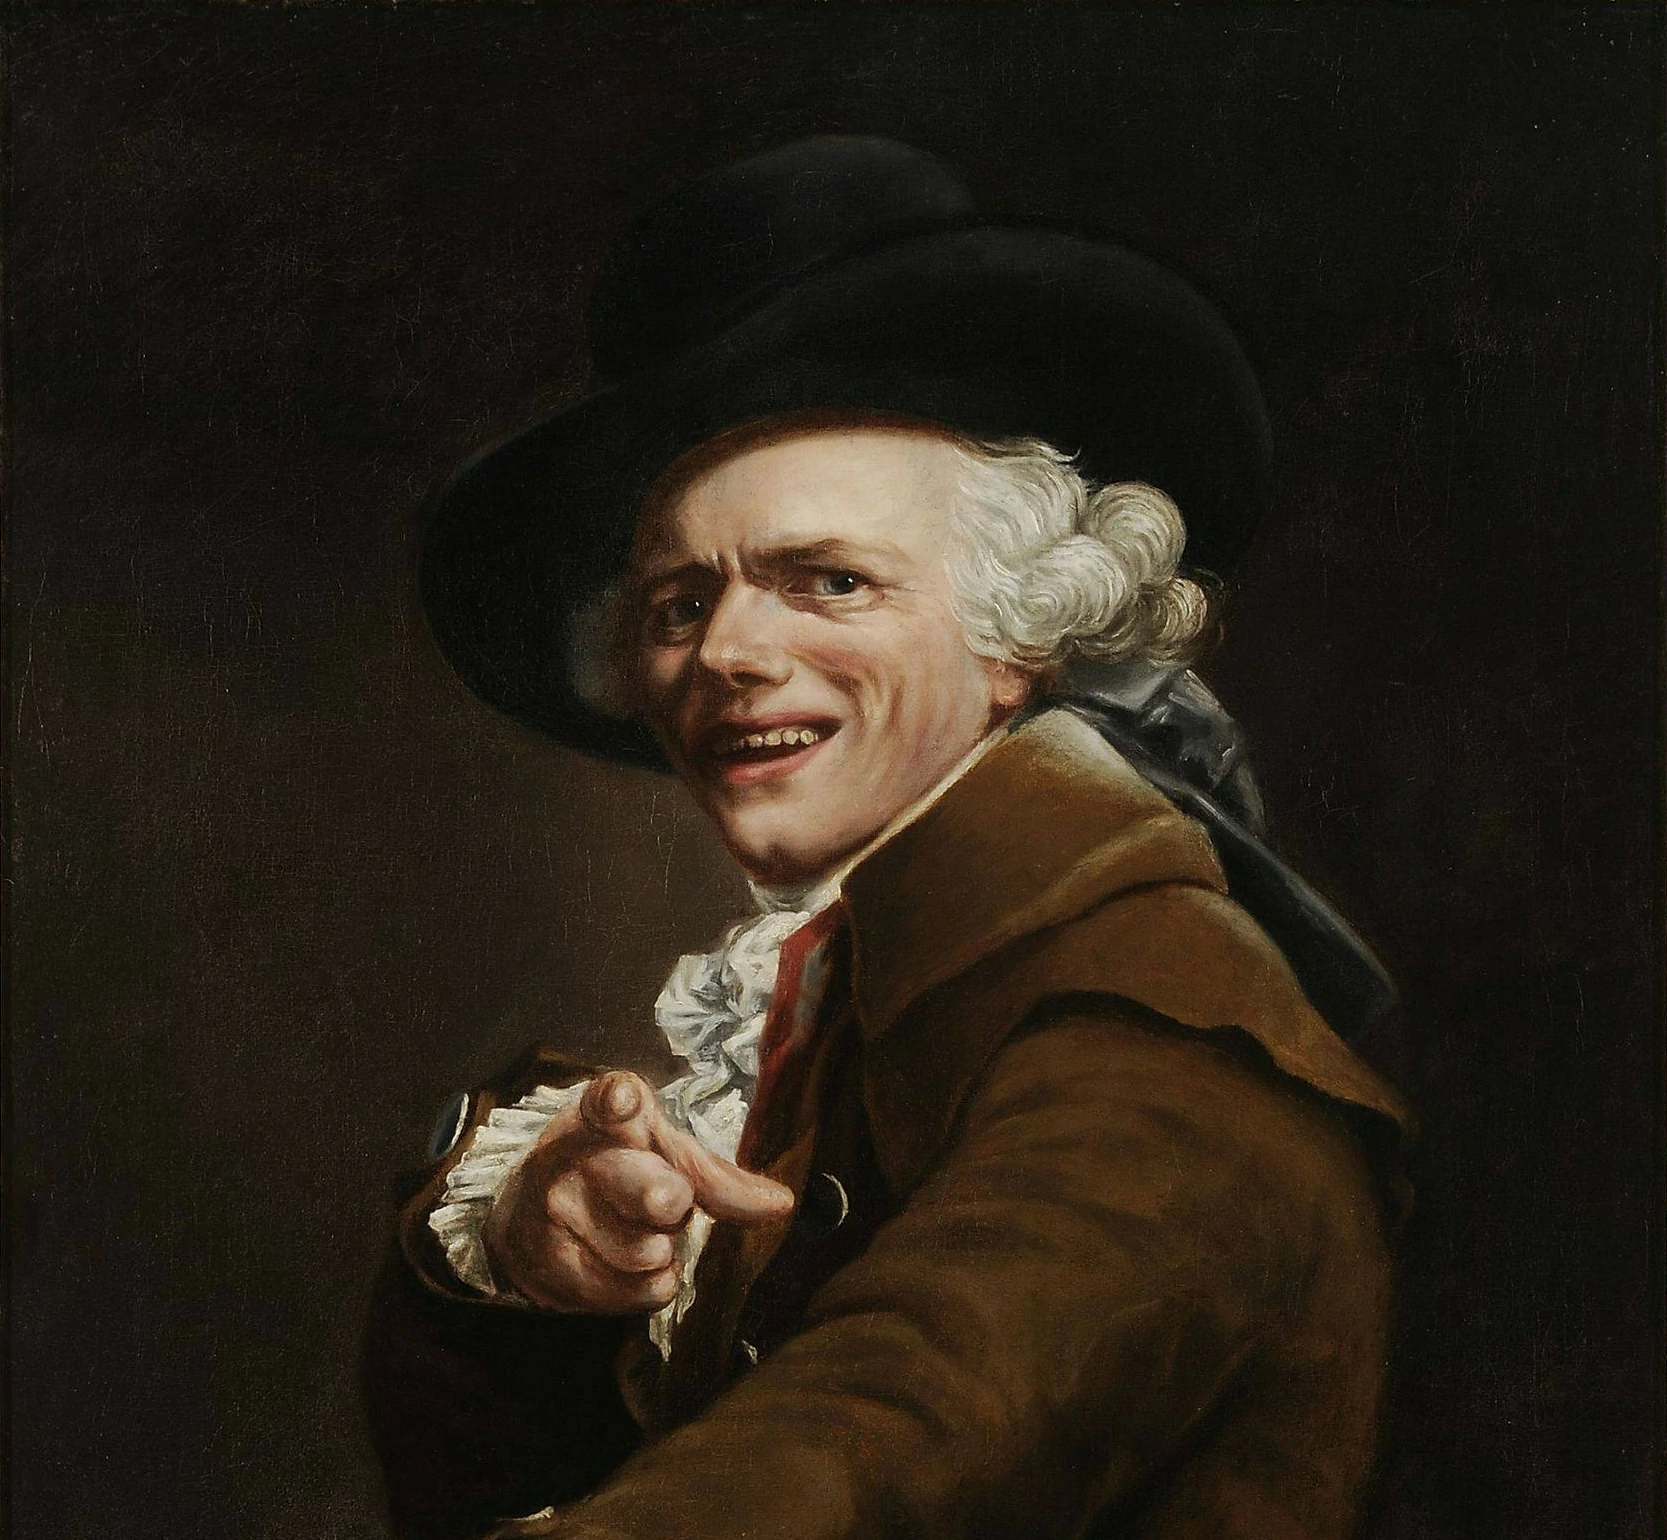 Joseph Ducreux, The Artists